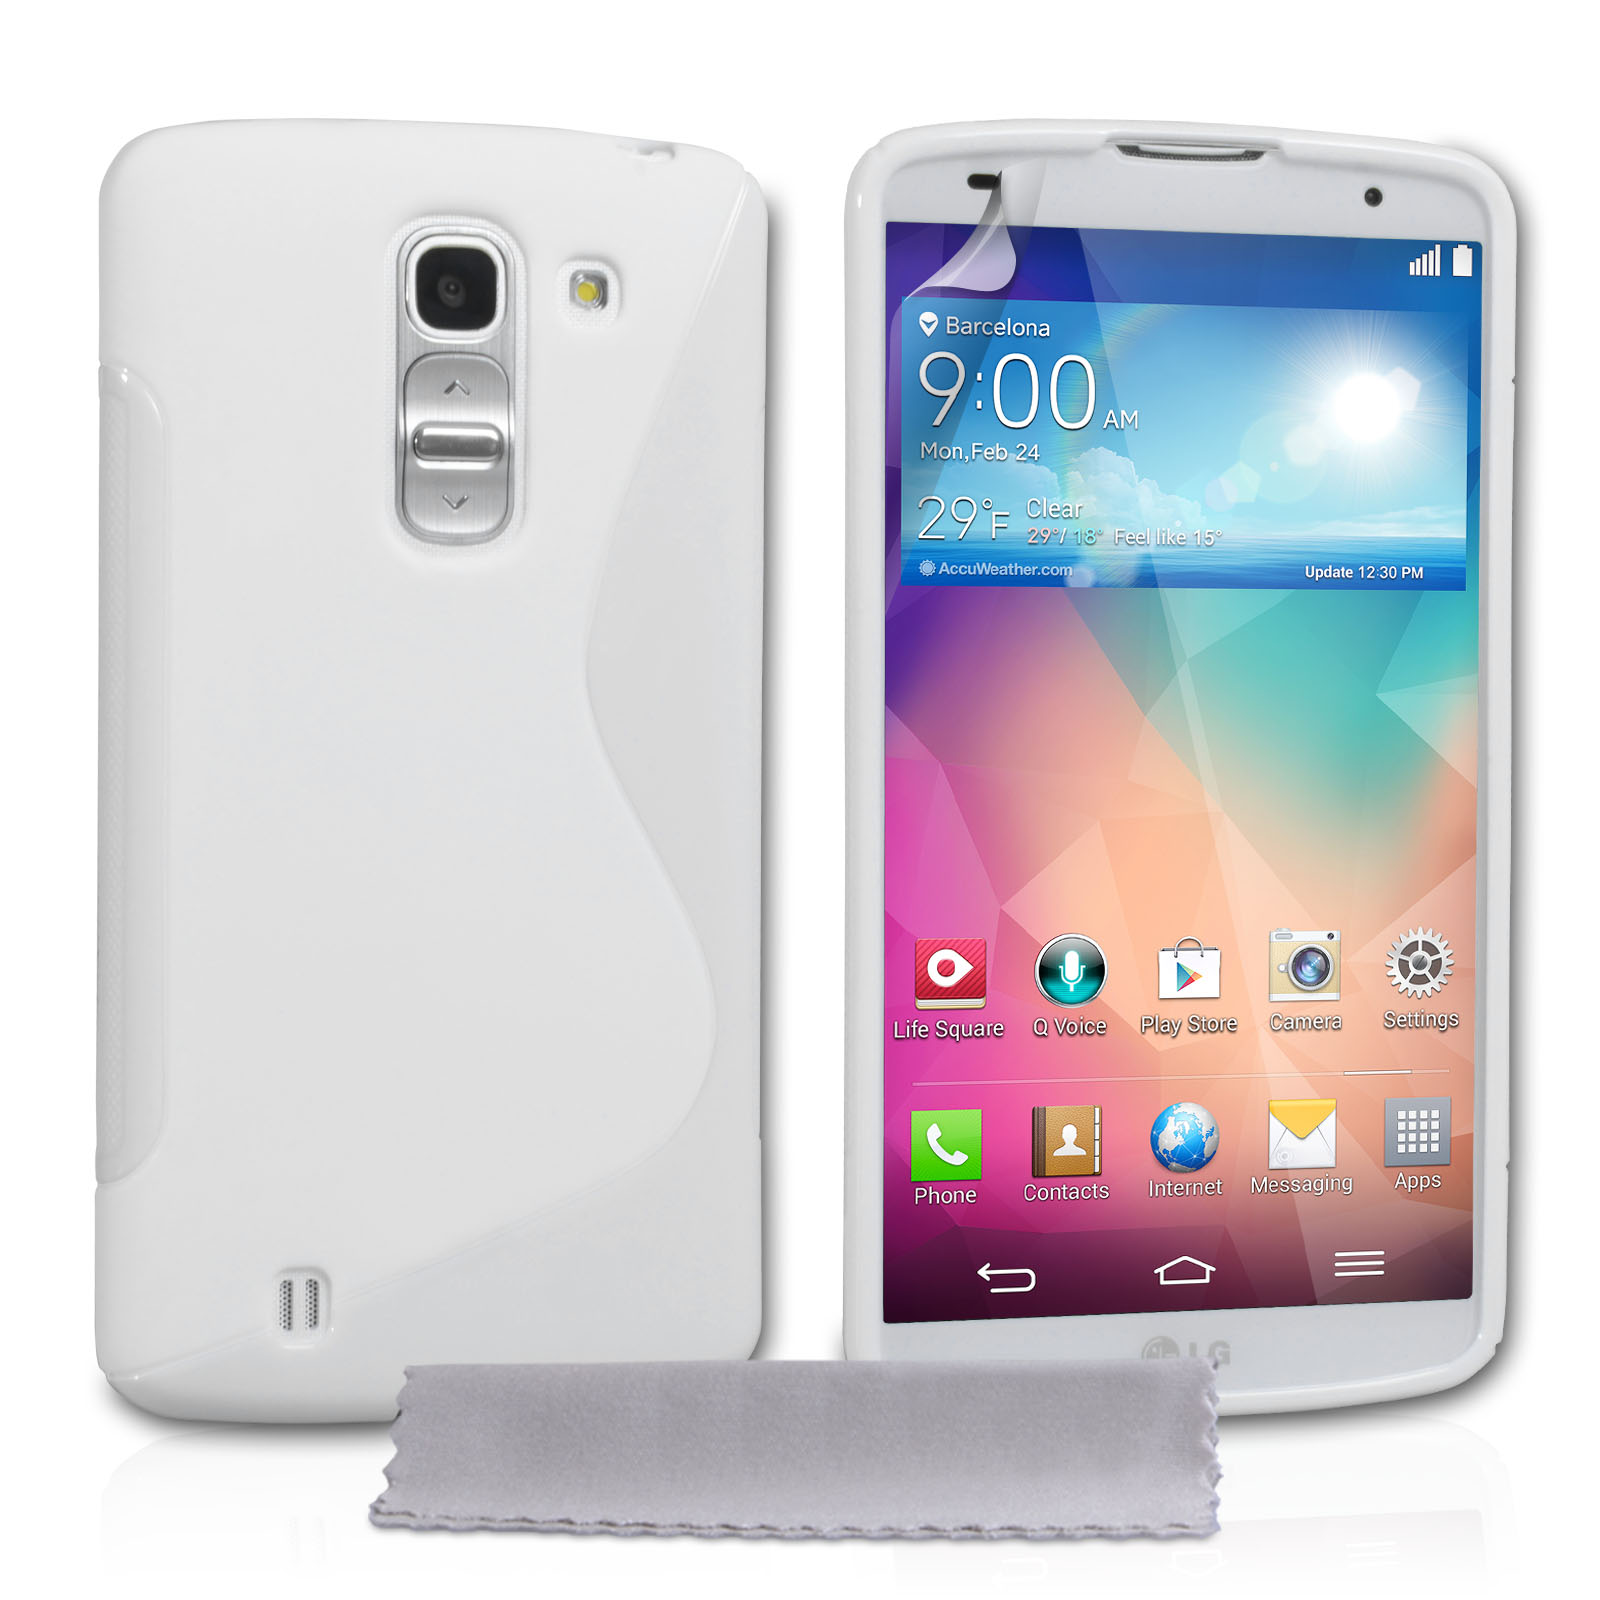 Caseflex LG G Pro 2 Silicone Gel S-Line Case - White